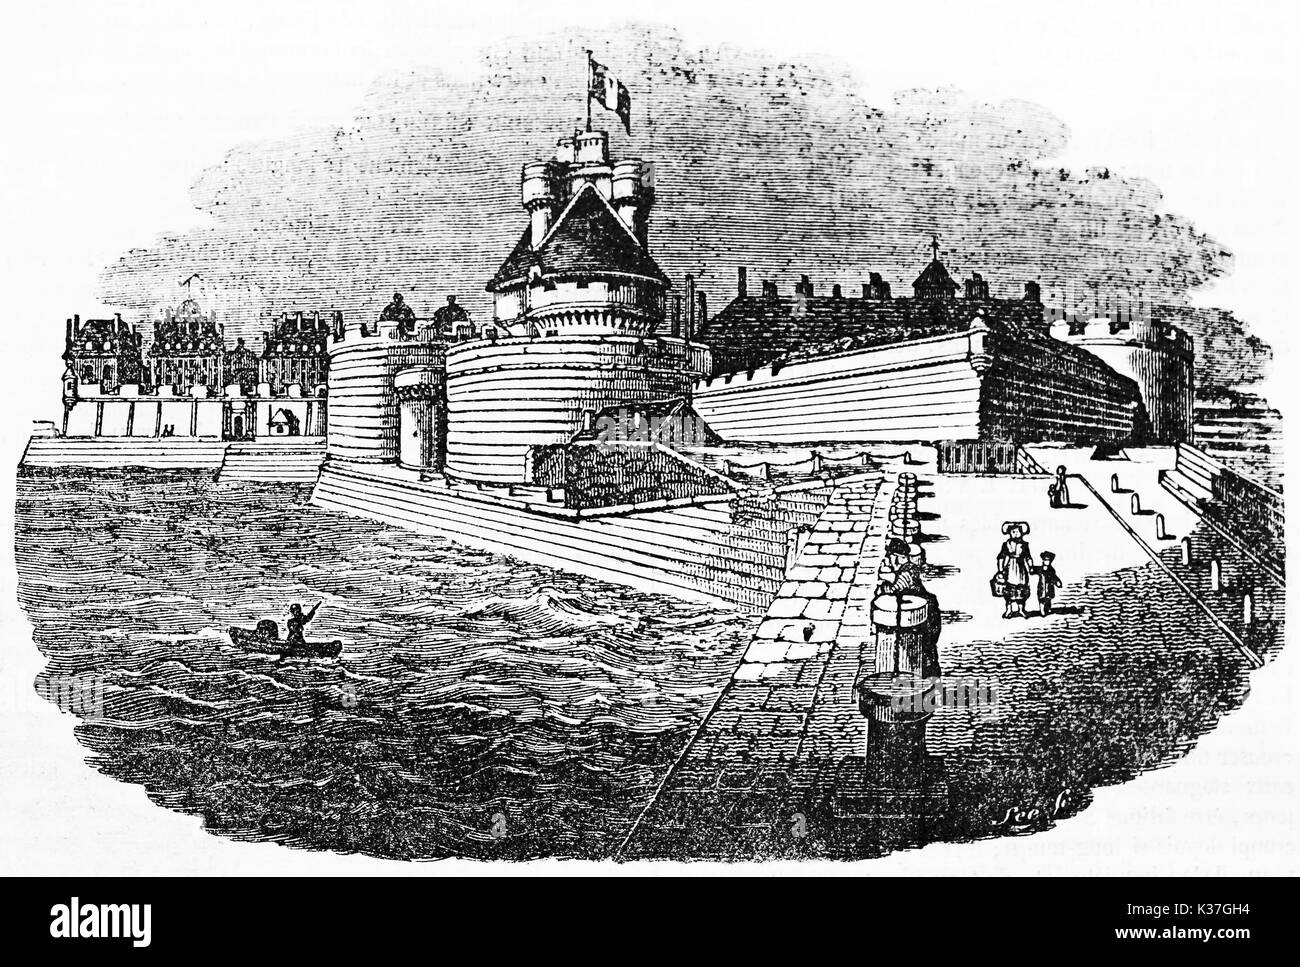 Alte Ansicht der mittelalterlichen befestigten Hafen, Saint-Malo schloss Bretagne Frankreich. Alte Illustration von Lee auf Magasin Pittoresque Paris 1834 veröffentlicht. Stockfoto